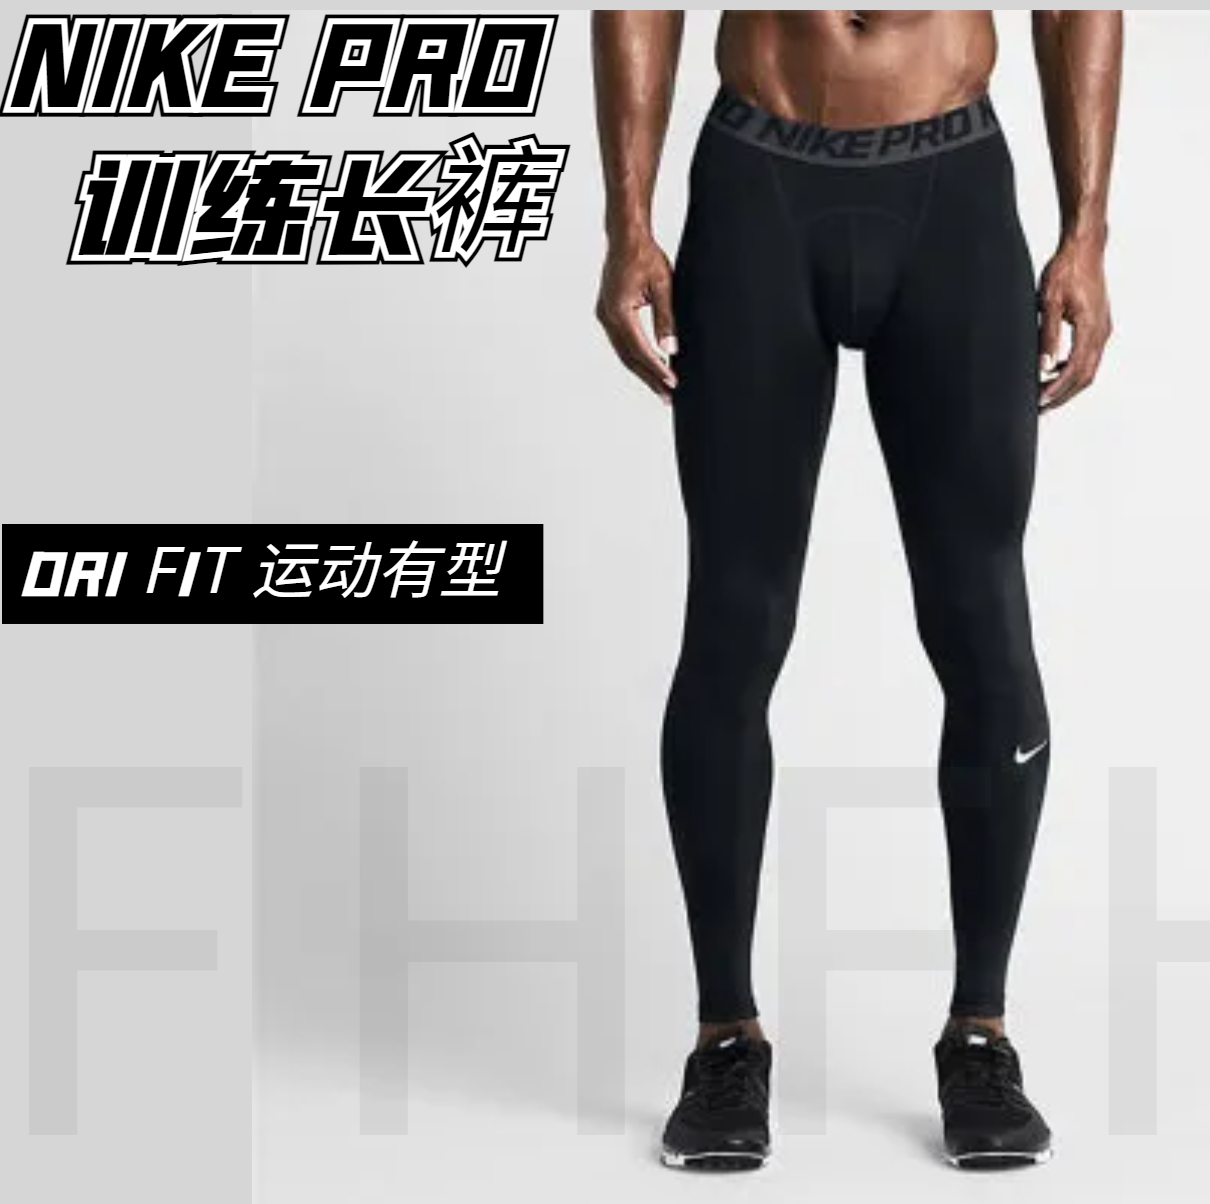 ナイキ/Nike プロ タイツ メンズ フィットネス トレーニング バスケットボール パンツ ランニング 伸縮性 速乾 スポーツ レギンス パンツ